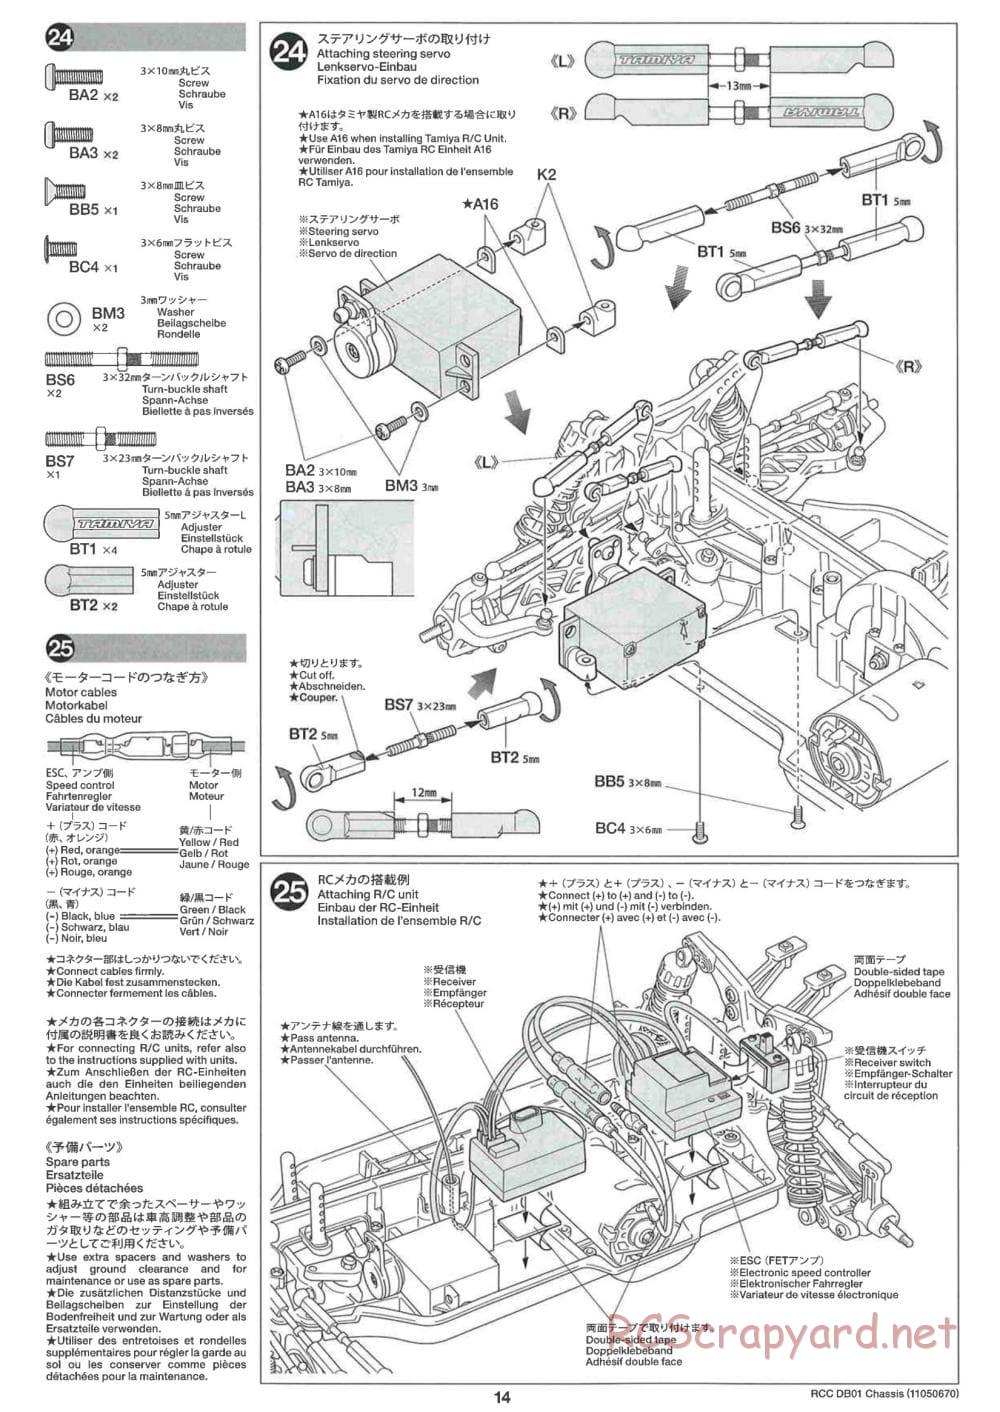 Tamiya - DB-01 Chassis - Manual - Page 14